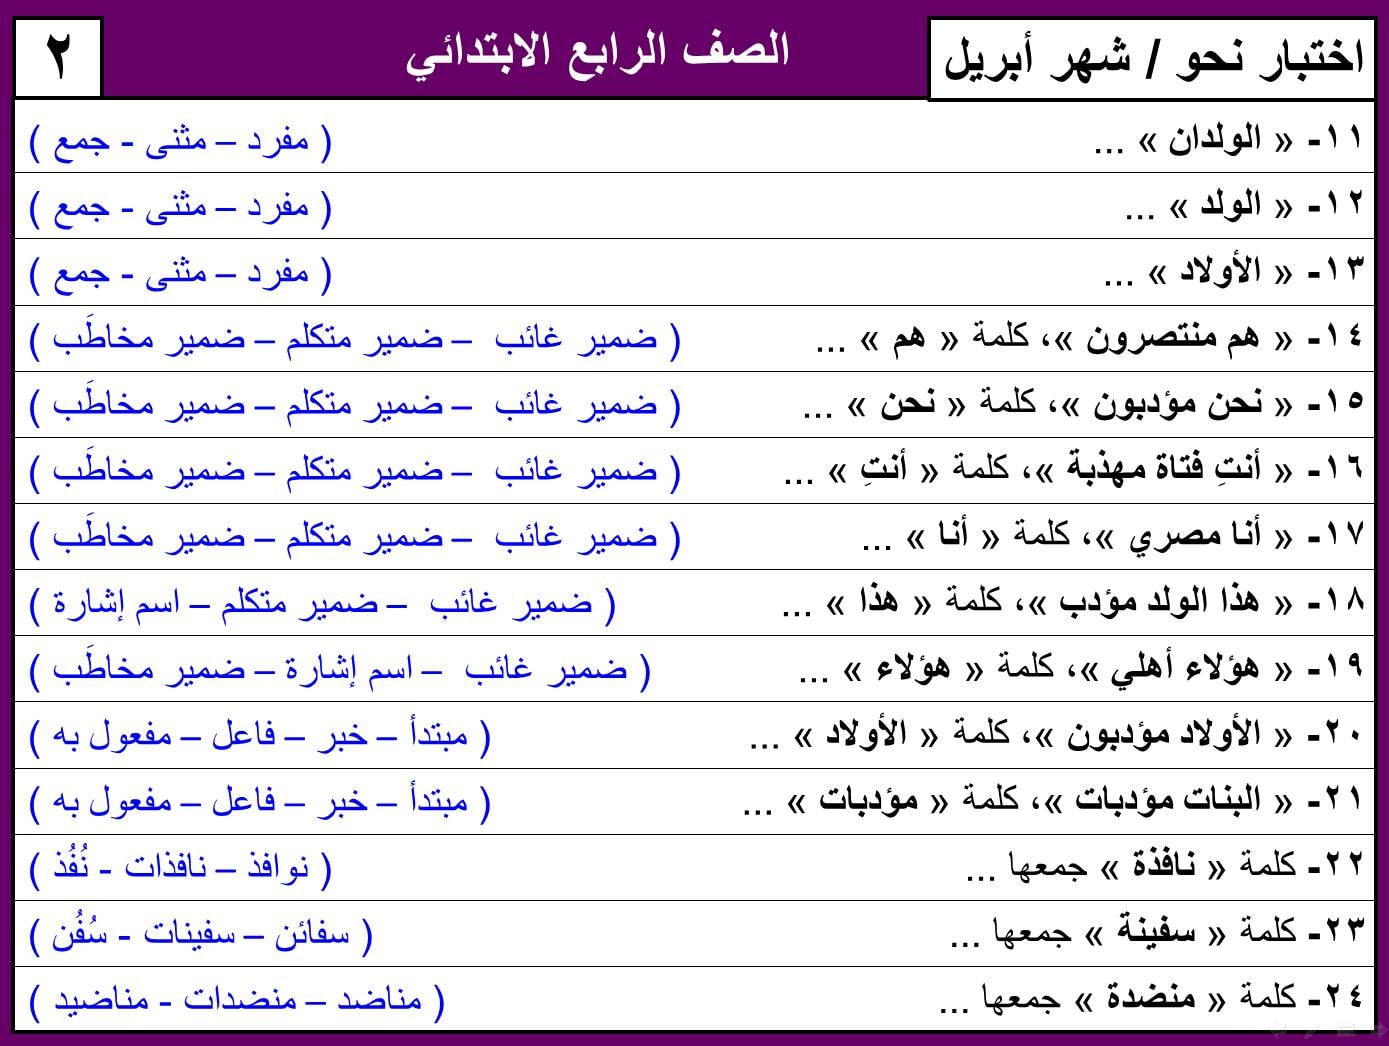 نماذج امتحان لغة عربية منهج ابريل الصف الرابع الابتدائي ترم ثاني بالاجابات 8